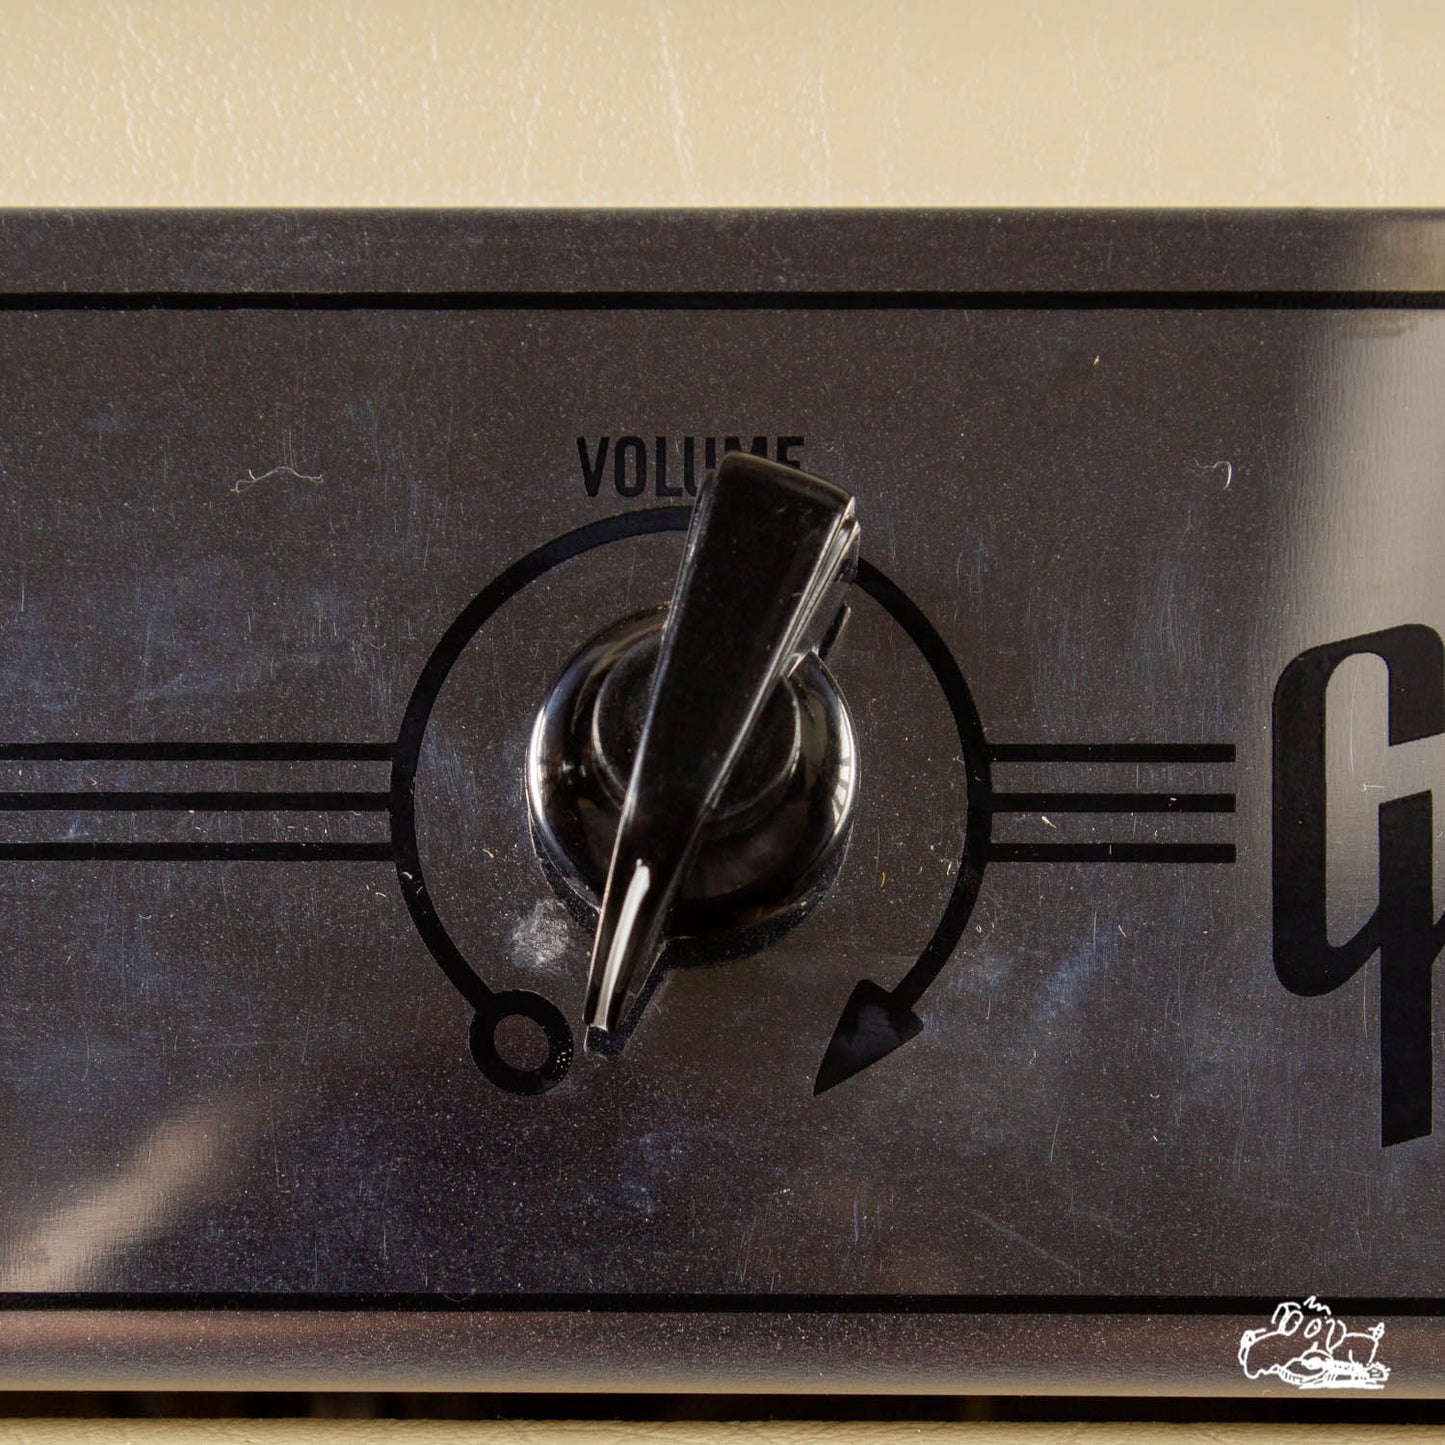 2006 Gibson GA-5 Amplifier